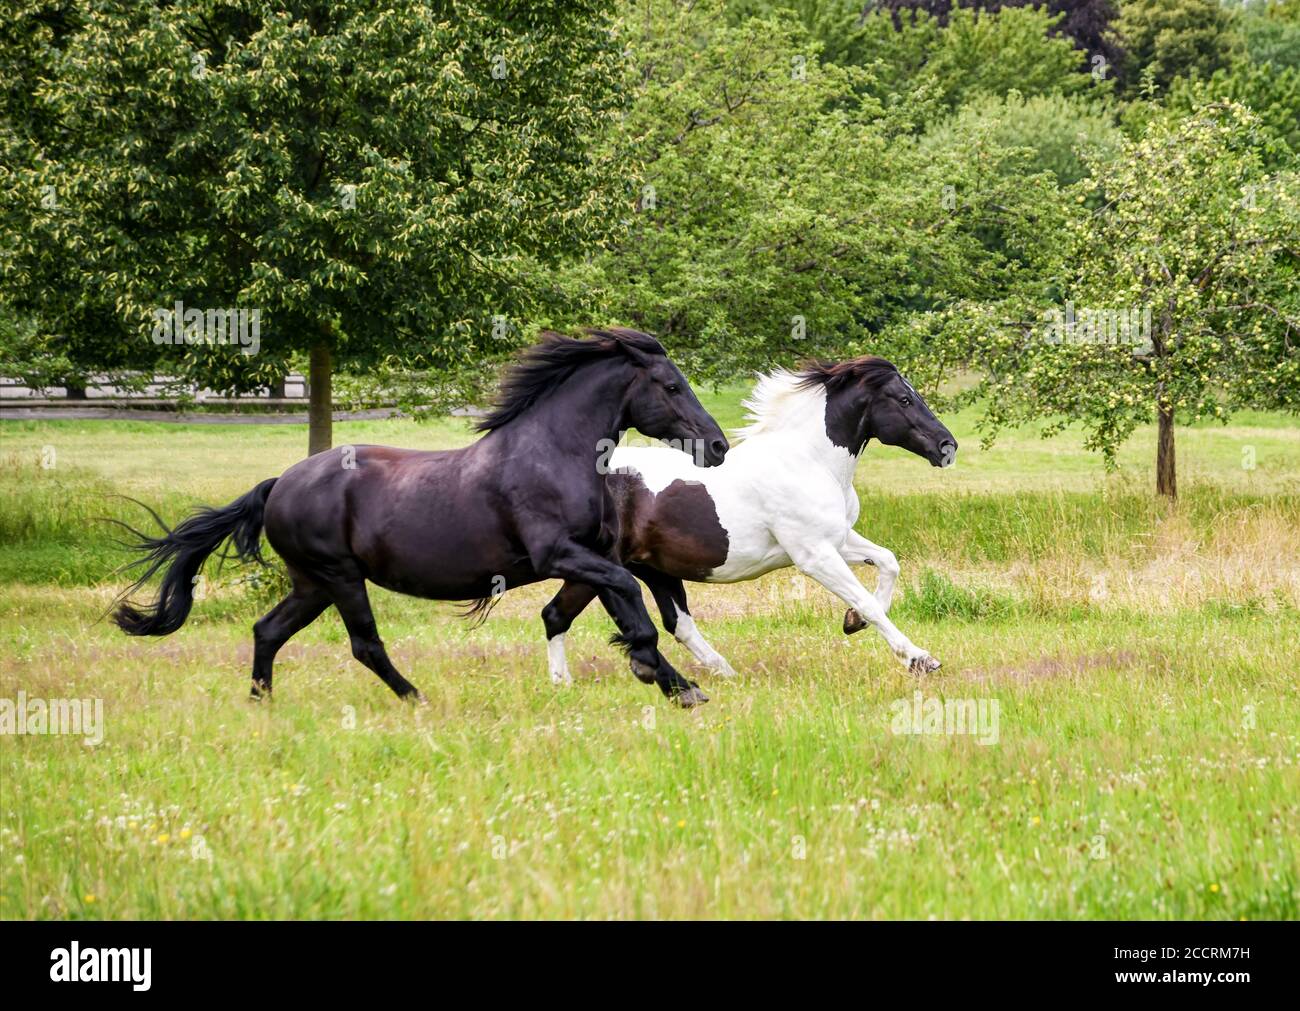 Dos caballos femeninos, de tipo barroco warmblood caballo, blanco pinto negro y negro y blanco tobiano estampado, corren en un gallop lleno en un verde meado de hierba Foto de stock